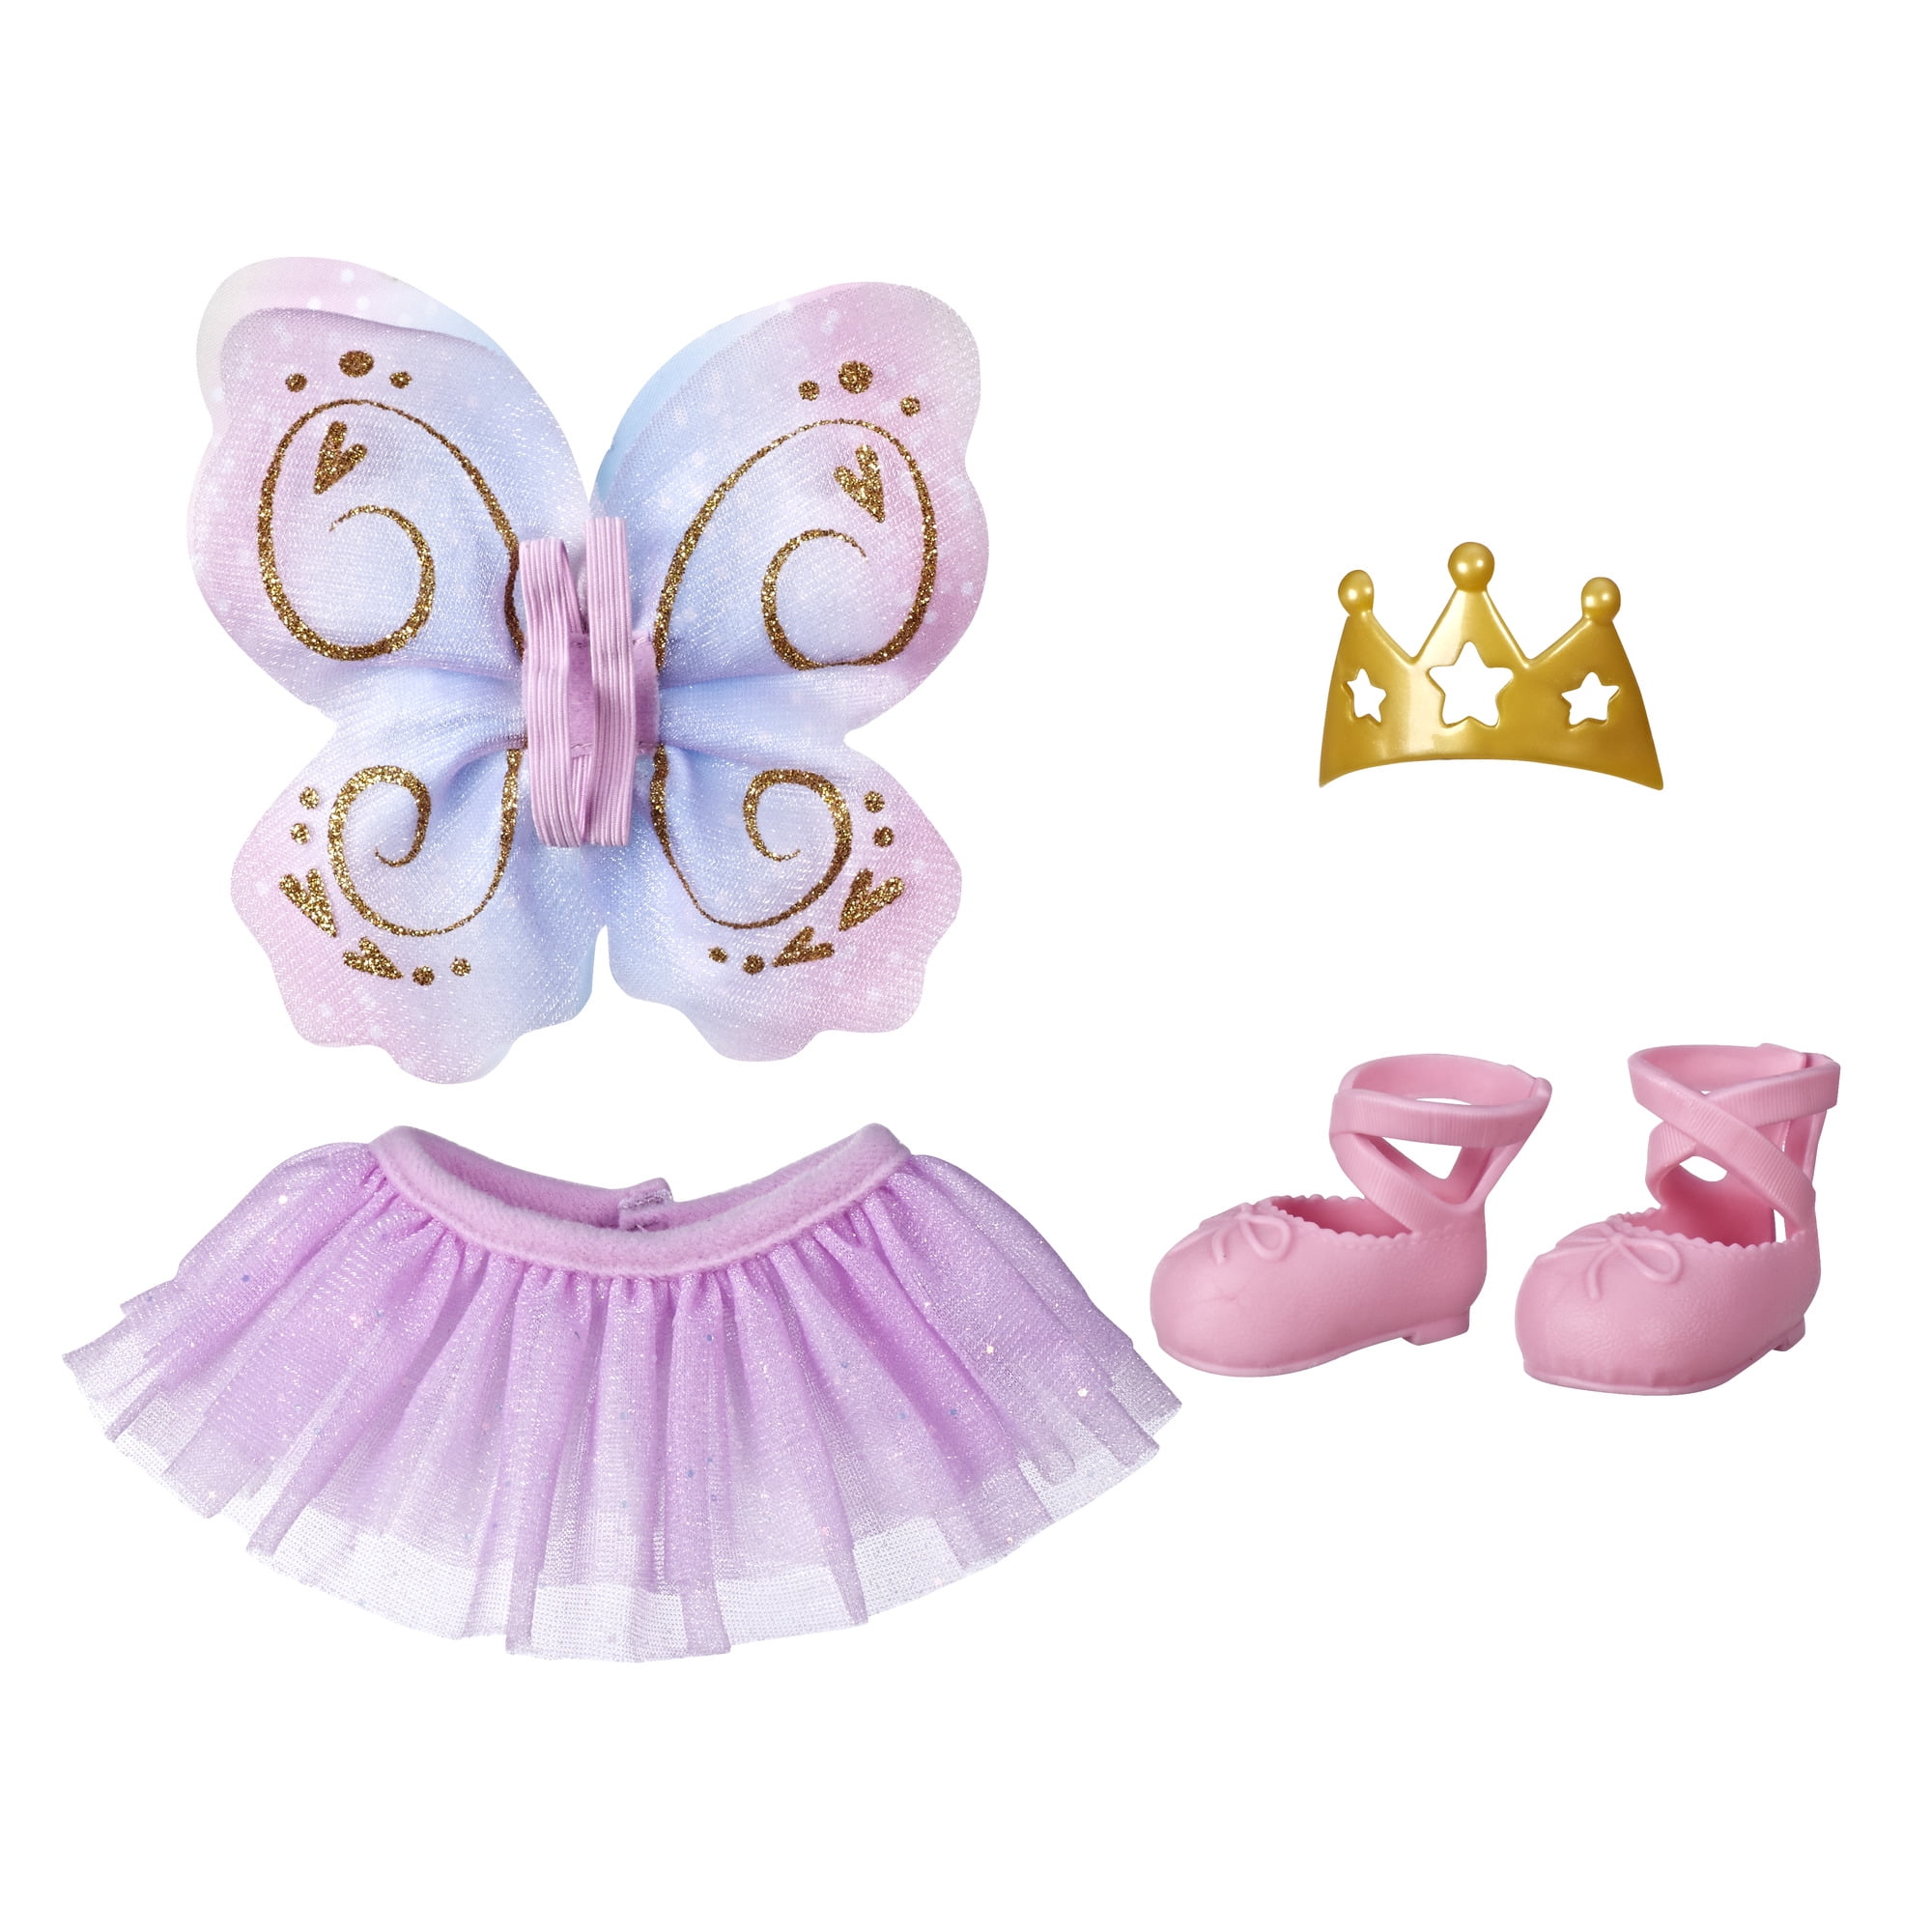 Smil Drejning Hør efter Baby Alive Little Styles, Ballet Outfit for Littles Toddler Dolls -  Walmart.com